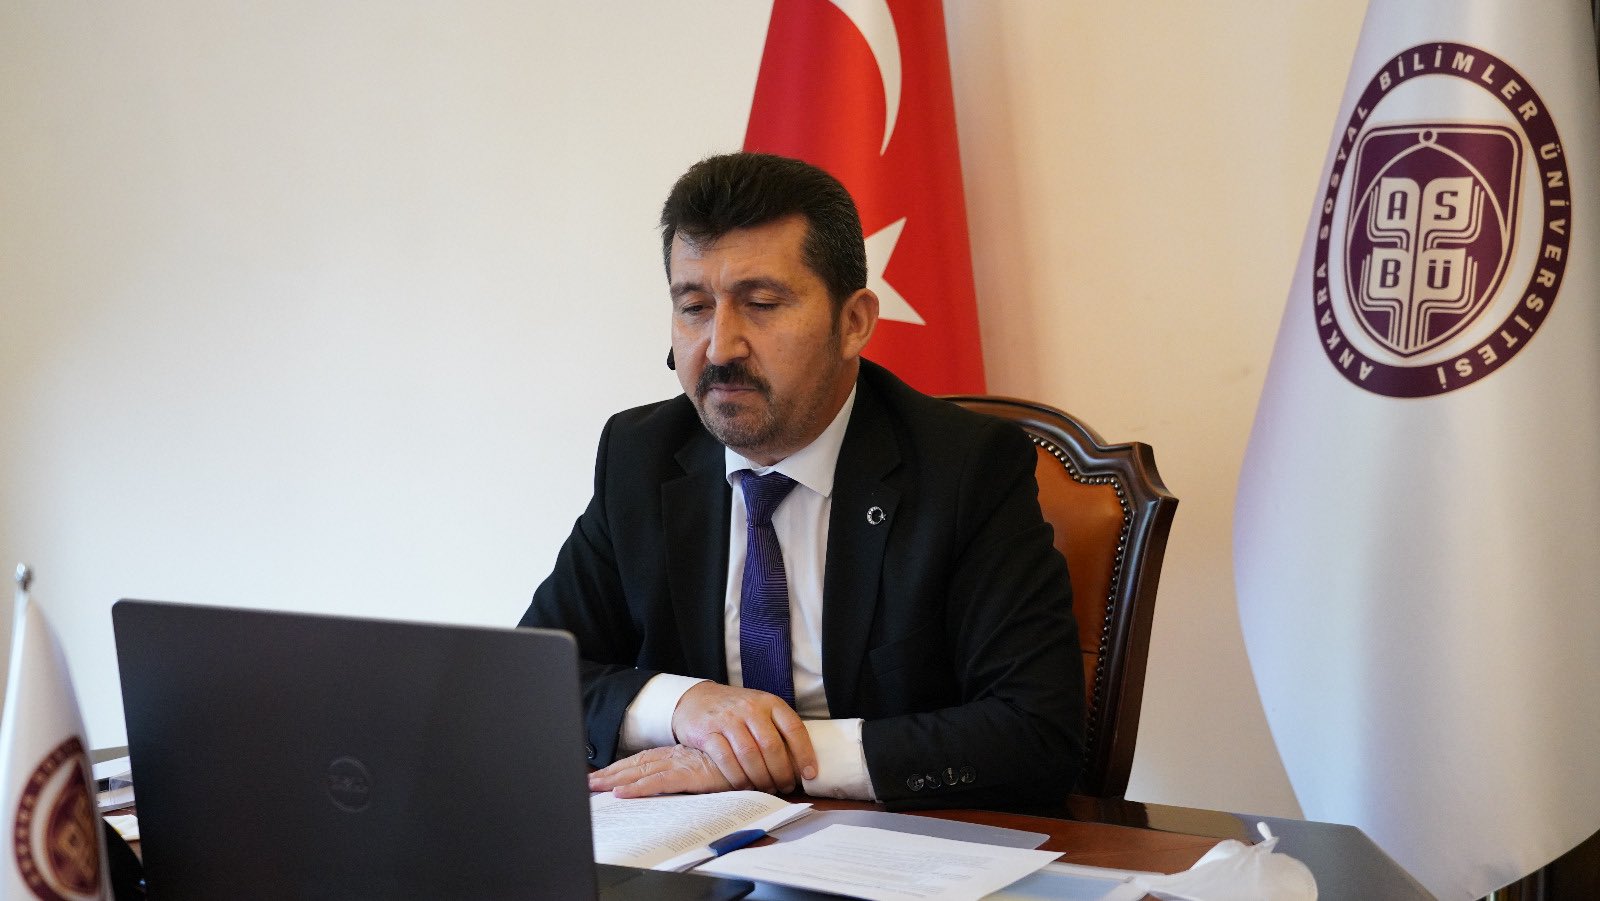 Prof. Dr. Musa Kazım Arıcan "Yılın fotoğrafları" oylamasına katıldı